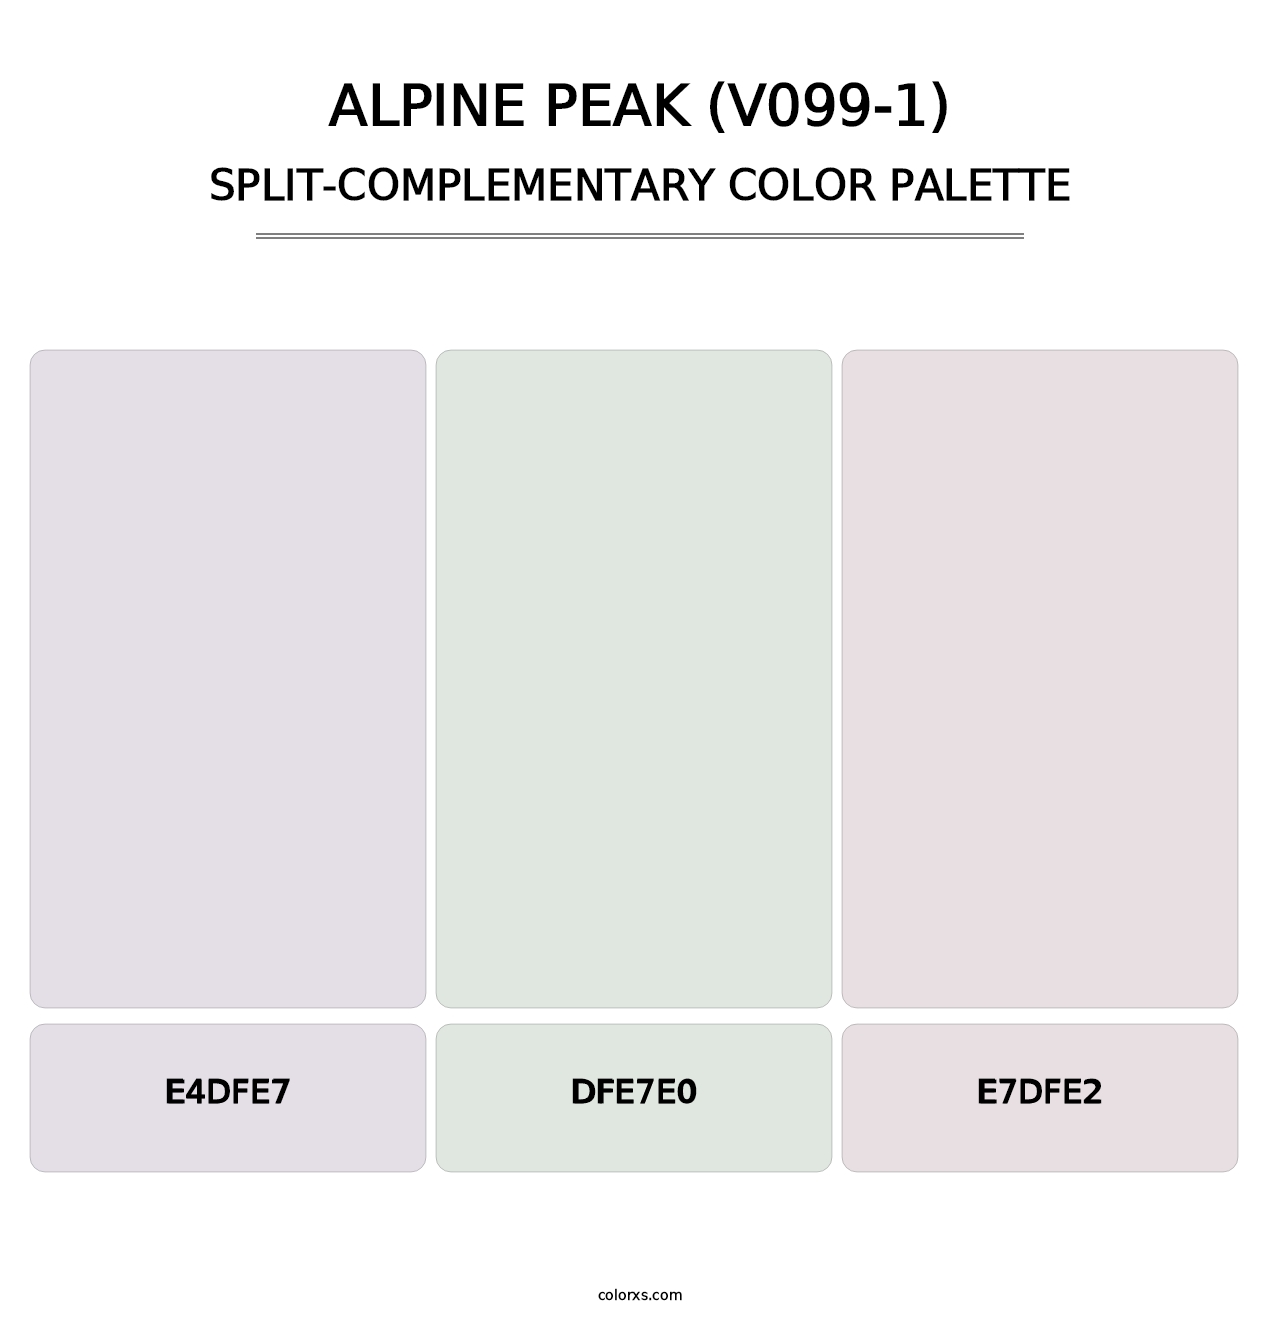 Alpine Peak (V099-1) - Split-Complementary Color Palette